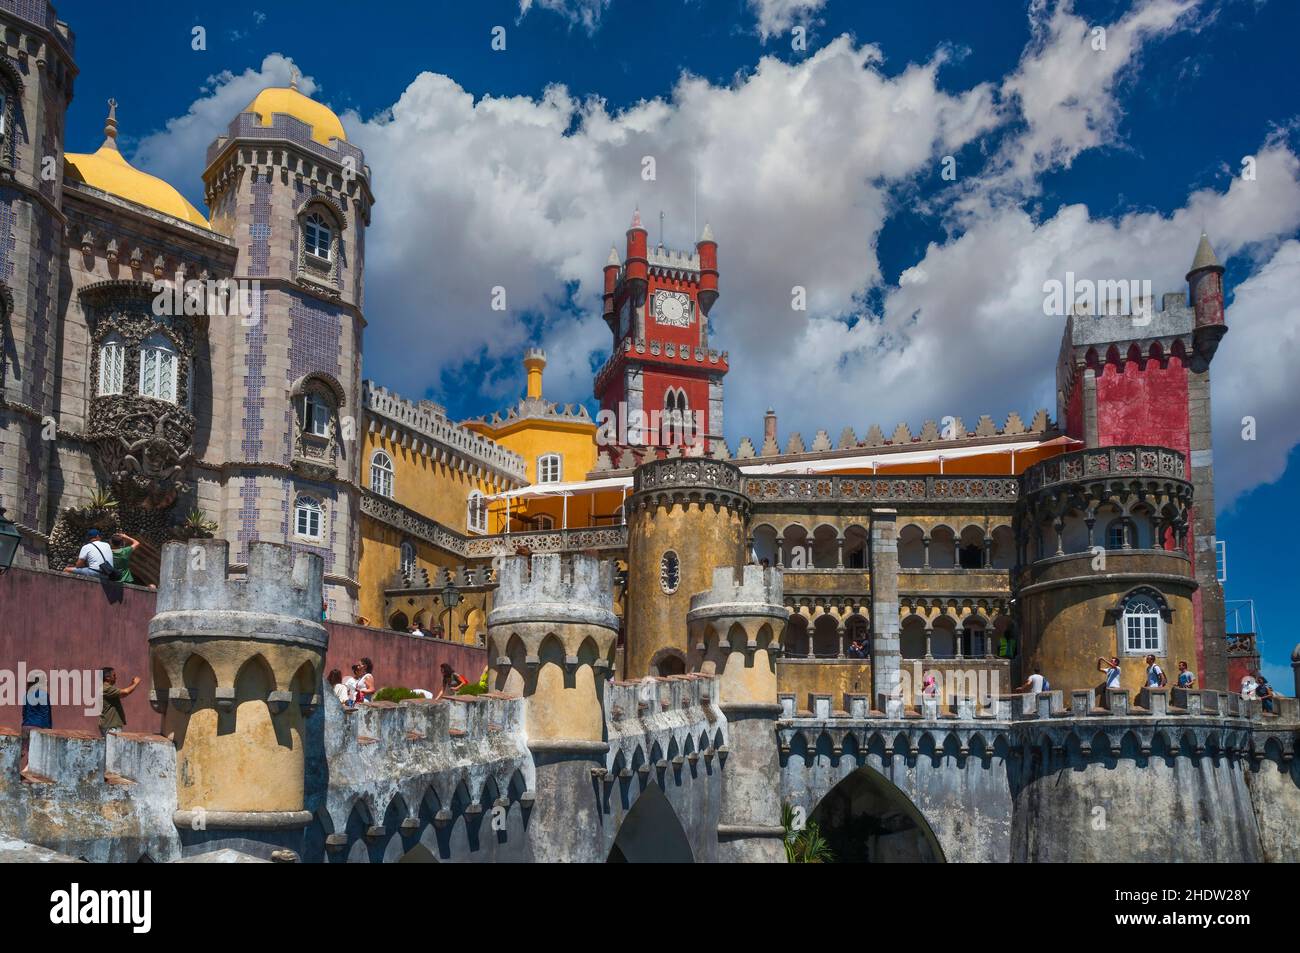 Di fronte al Palazzo da pena, nella cittadina collinare portoghese di Sintra, con cielo blu e nuvole bianche. Foto Stock